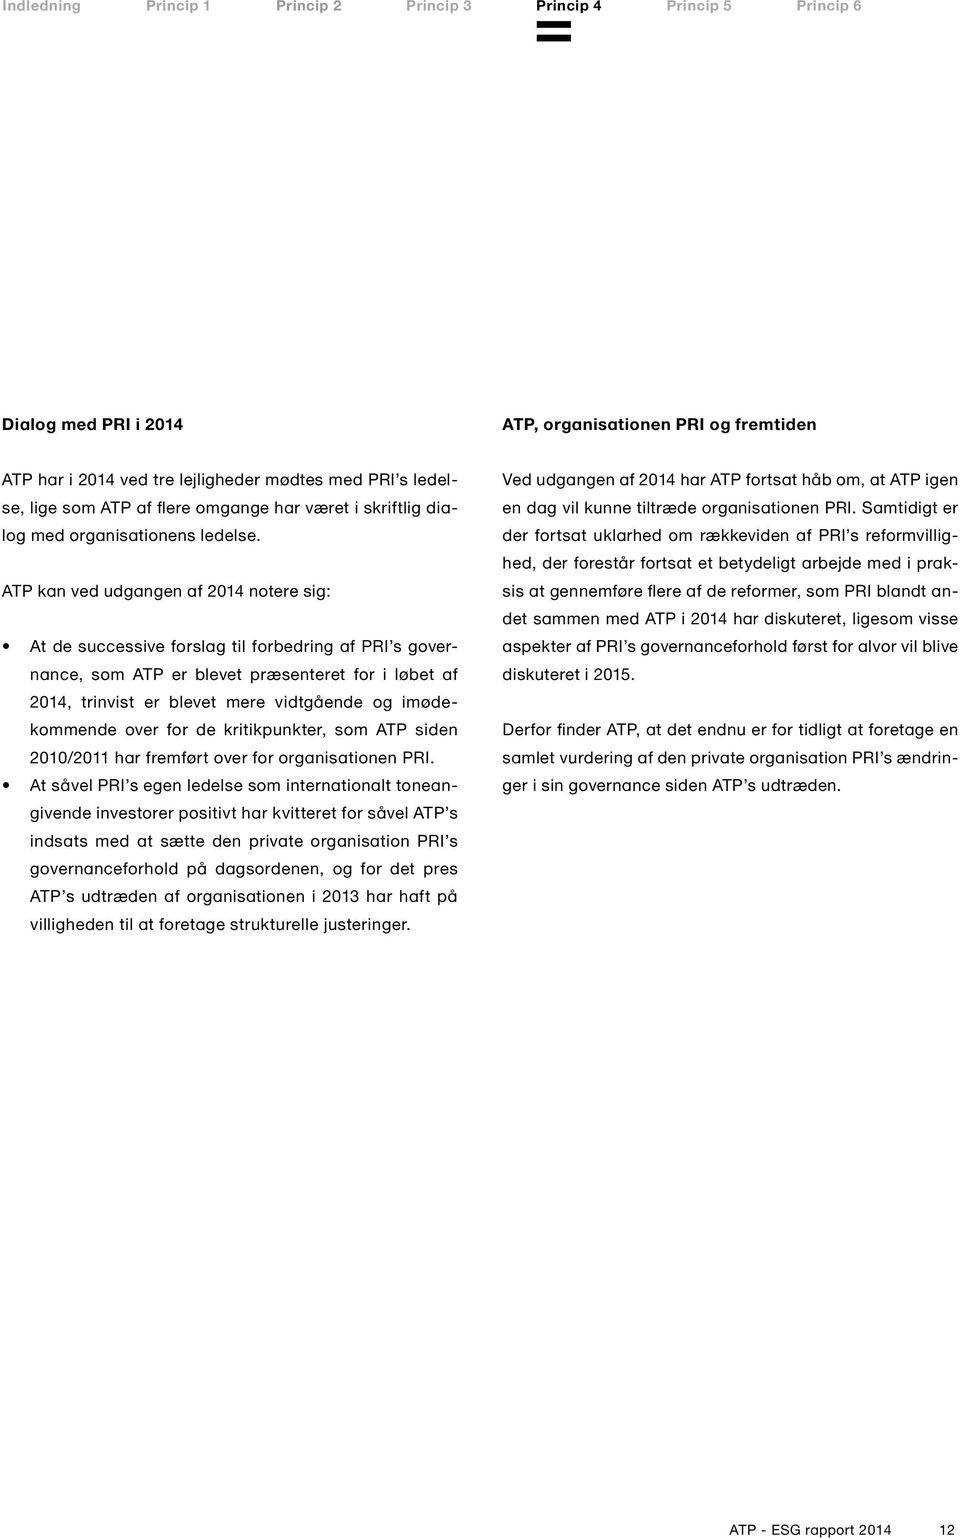 ATP kan ved udgangen af 2014 notere sig: At de successive forslag til forbedring af PRI s governance, som ATP er blevet præsenteret for i løbet af 2014, trinvist er blevet mere vidtgående og